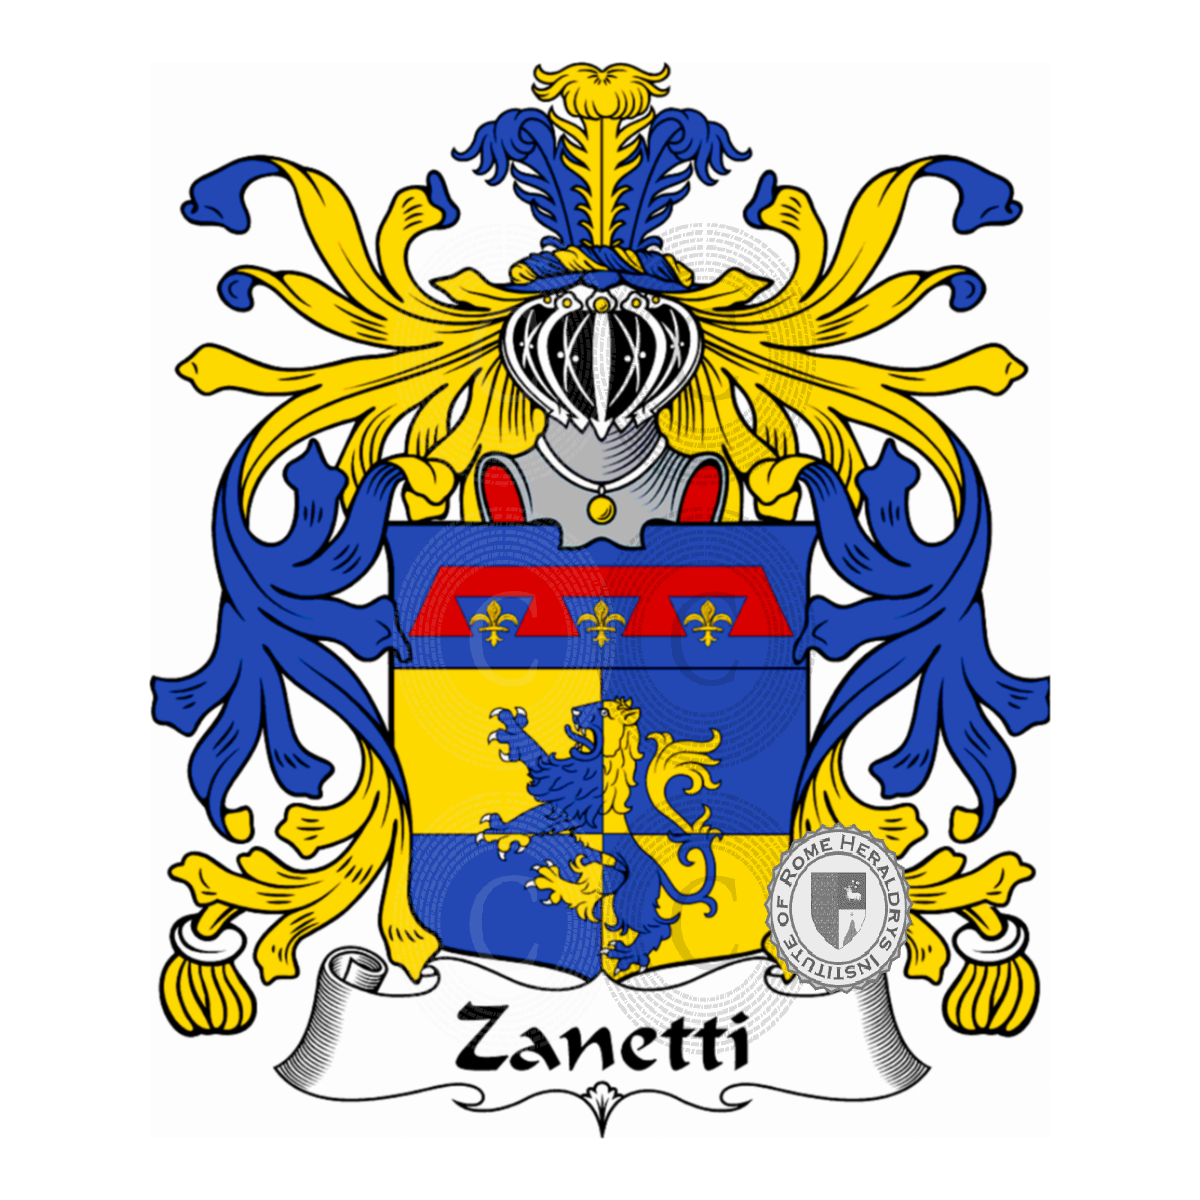 Stemma della famigliaZanetti, de Zanetti,Zanelli,Zanet,Zanetto,Zuanetti